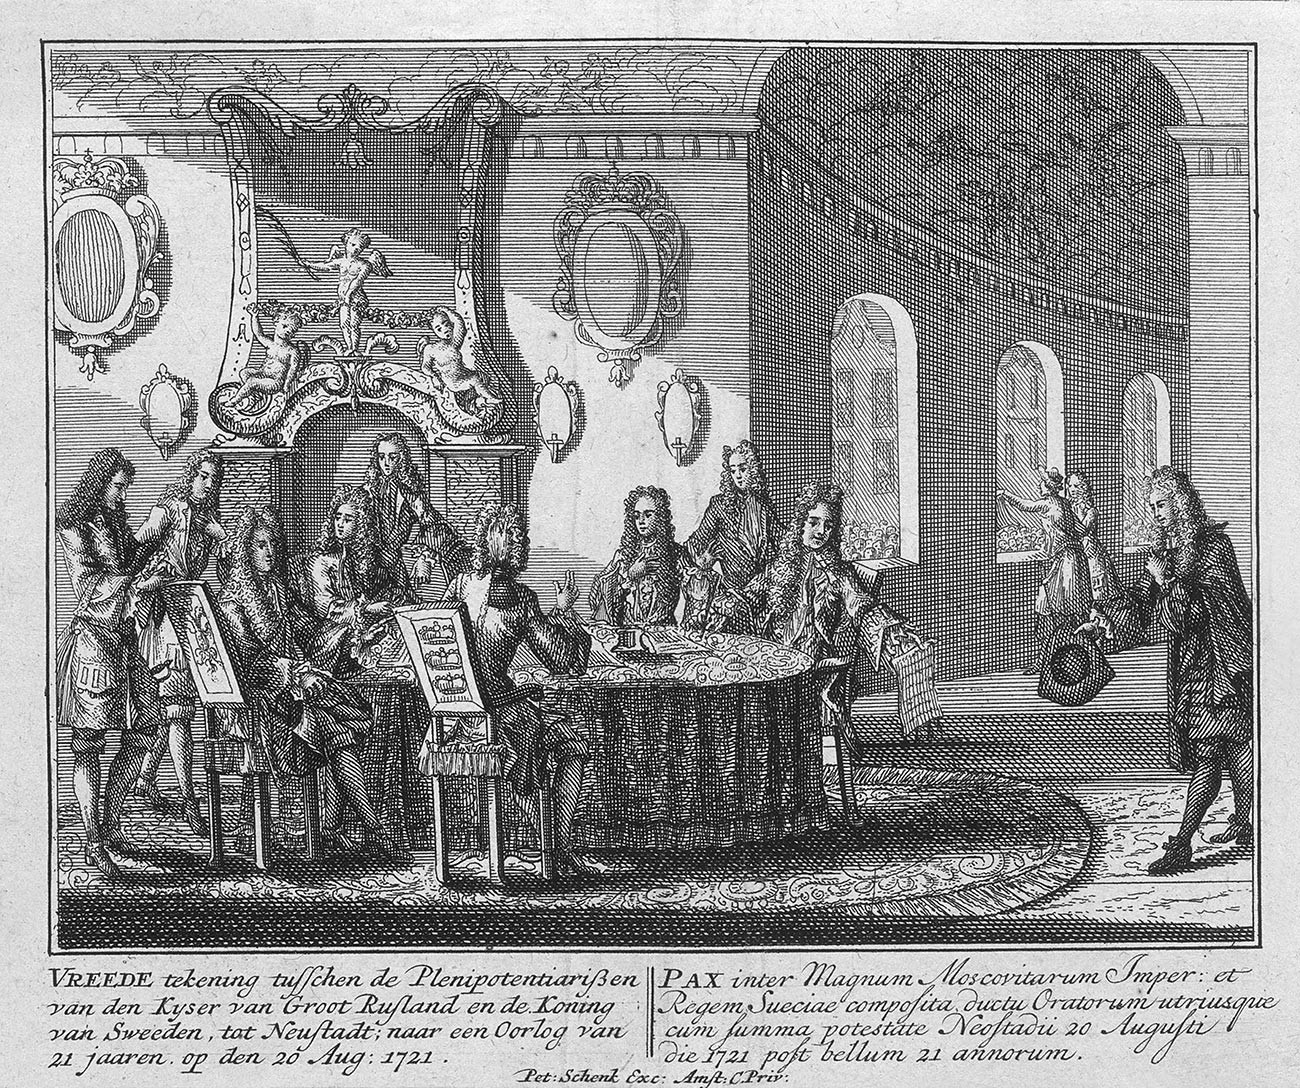 Încheierea Tratatului de pace de la Nystad la 20 august 1721.